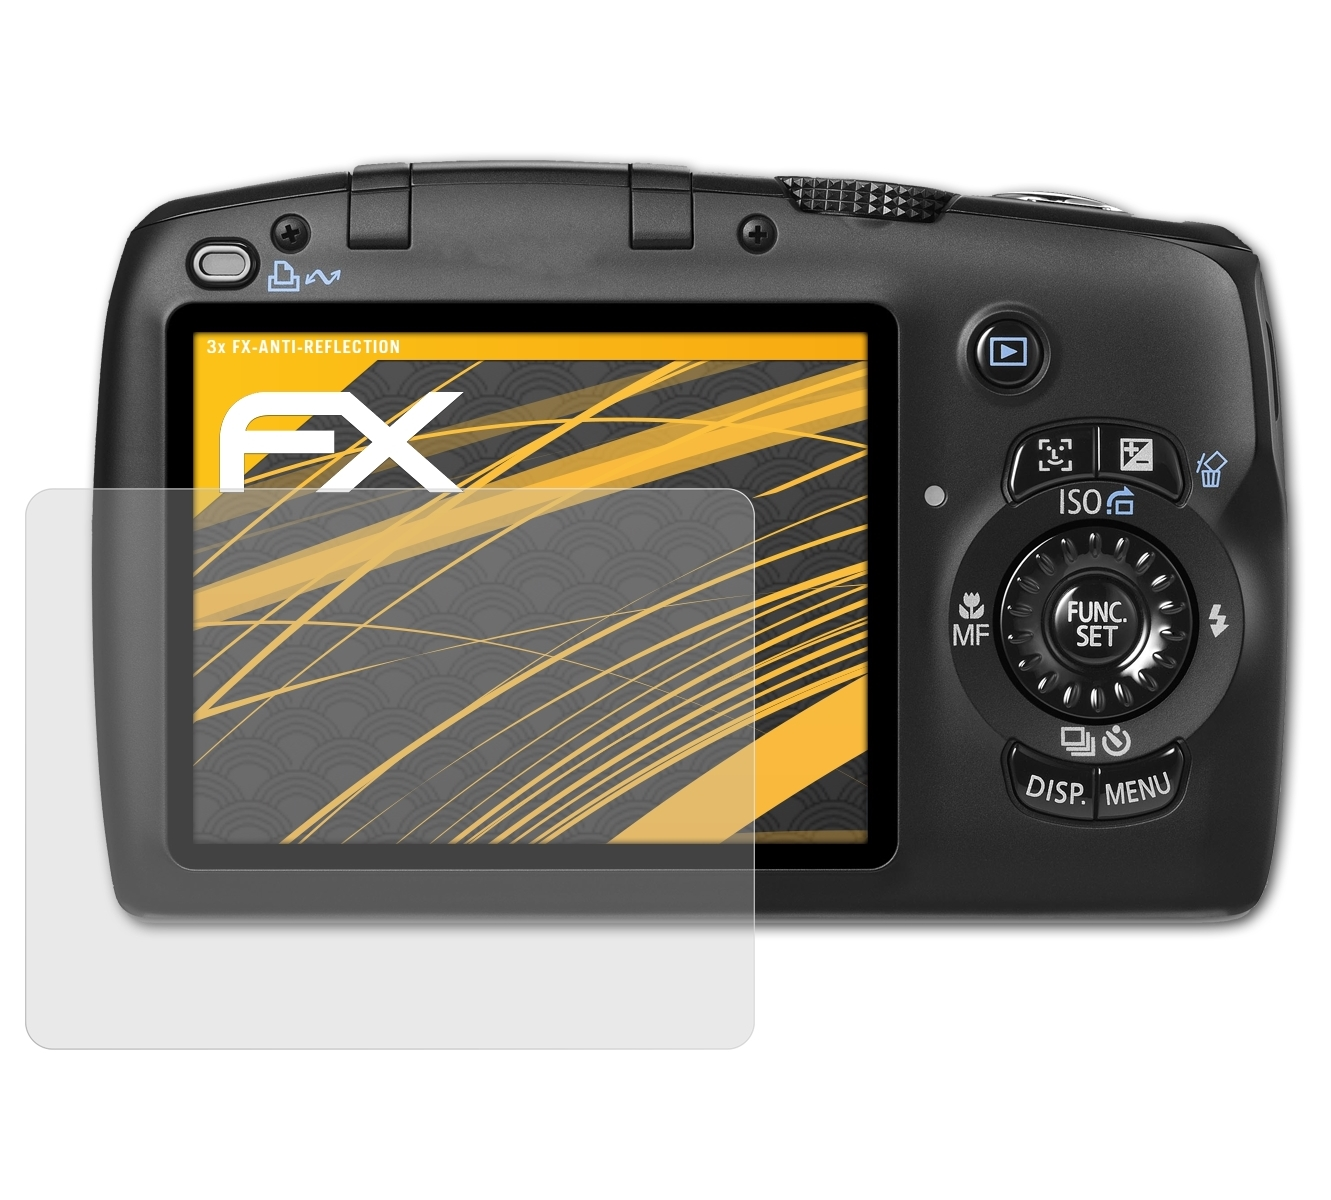 ATFOLIX 3x FX-Antireflex Displayschutz(für SX110 IS) PowerShot Canon